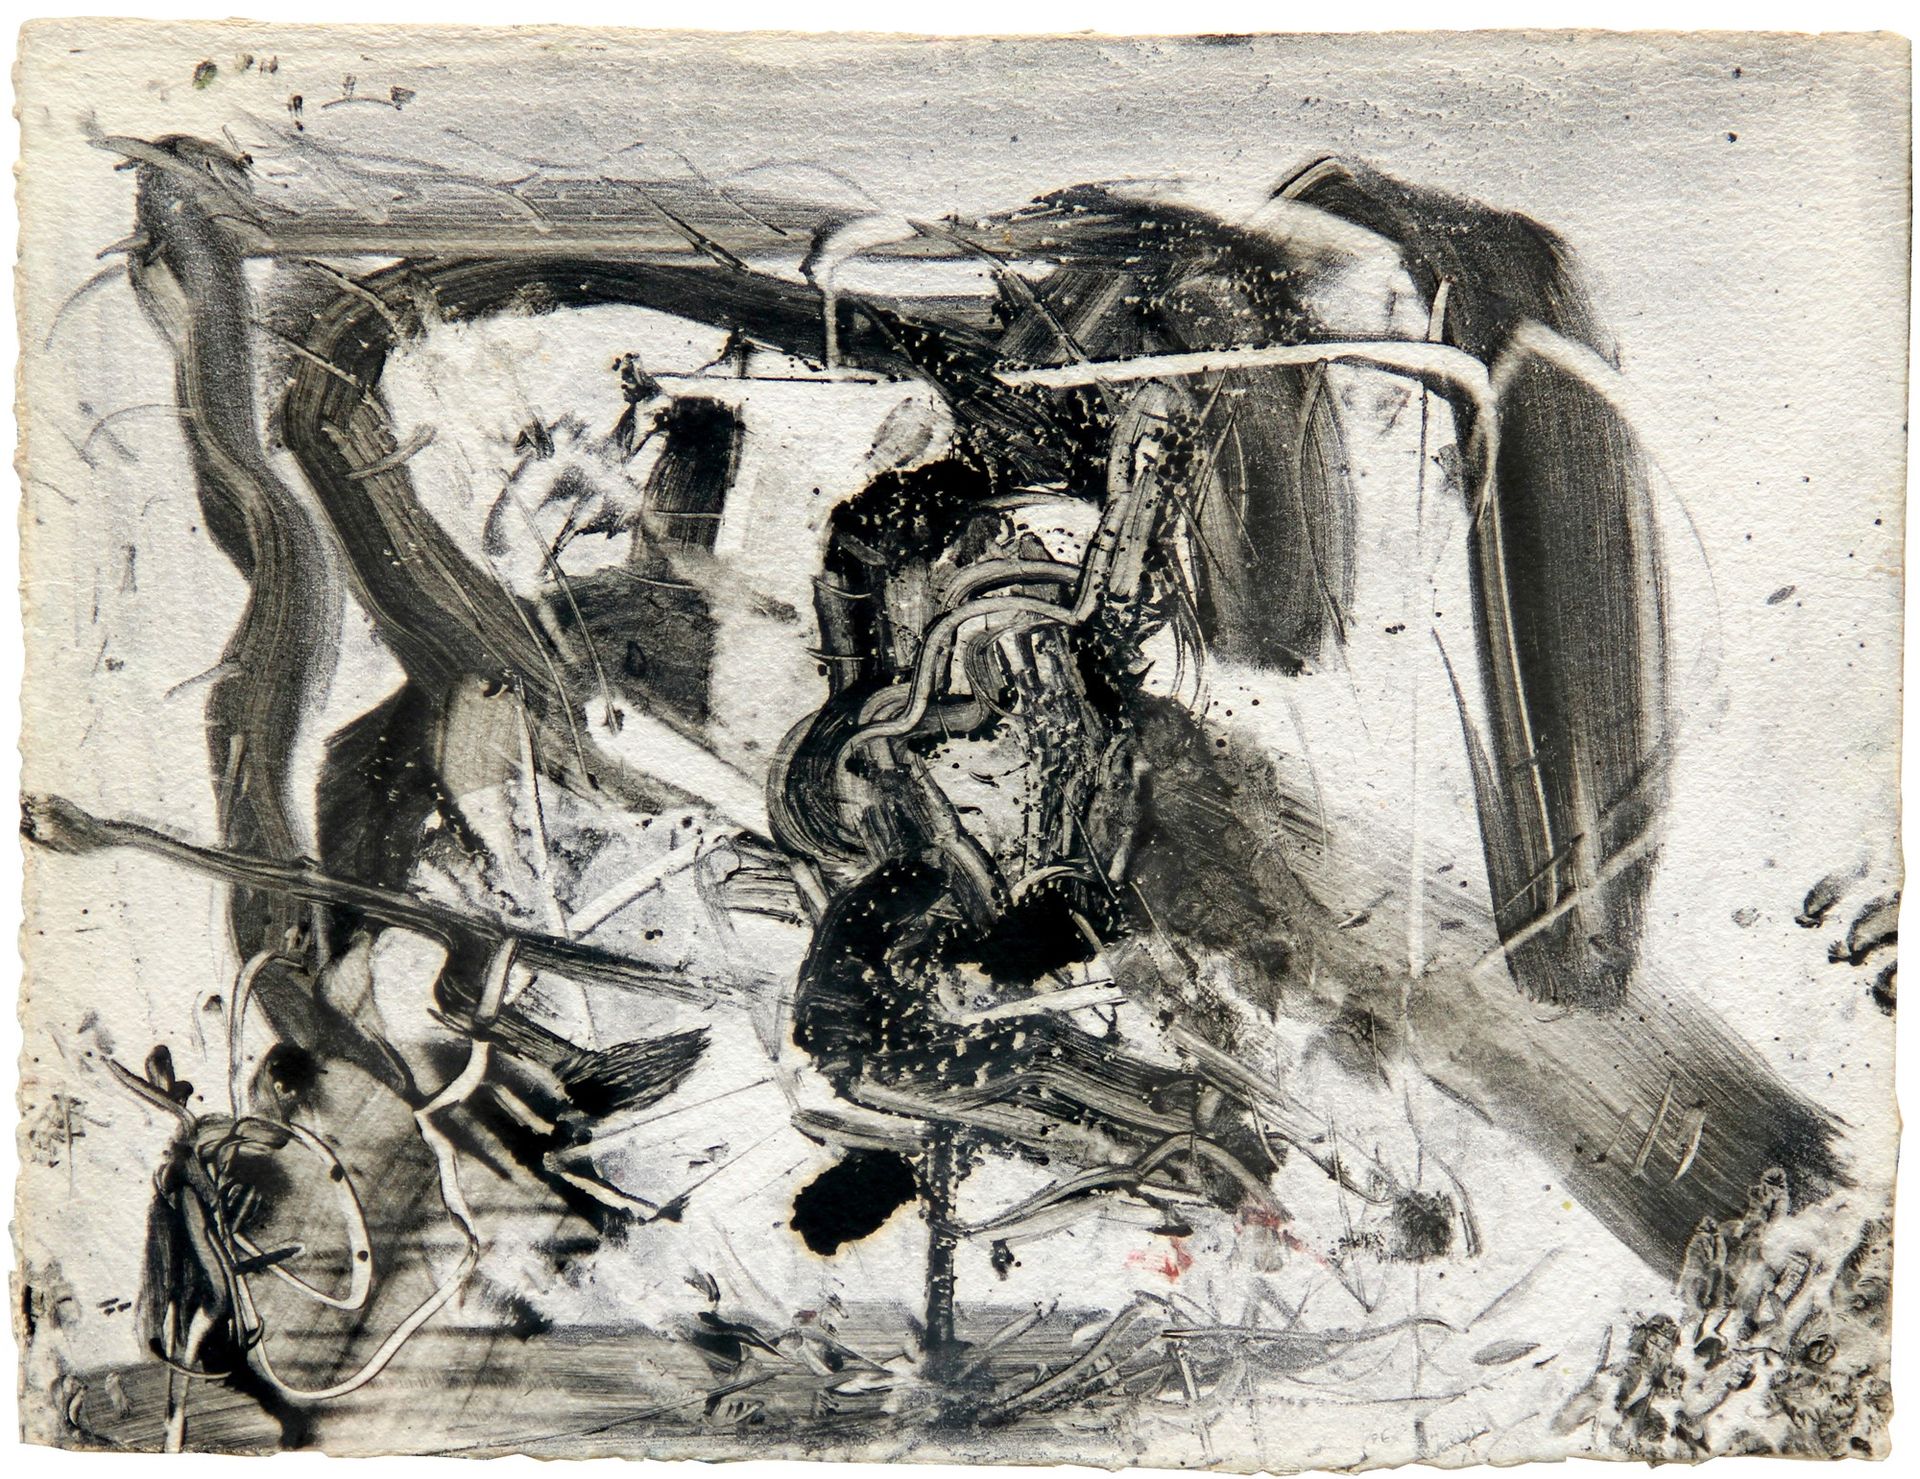 Emilio VEDOVA Spazio opposto n. 10 2006, Öl auf Karton Monotypie, cm. 57x75

Bes&hellip;